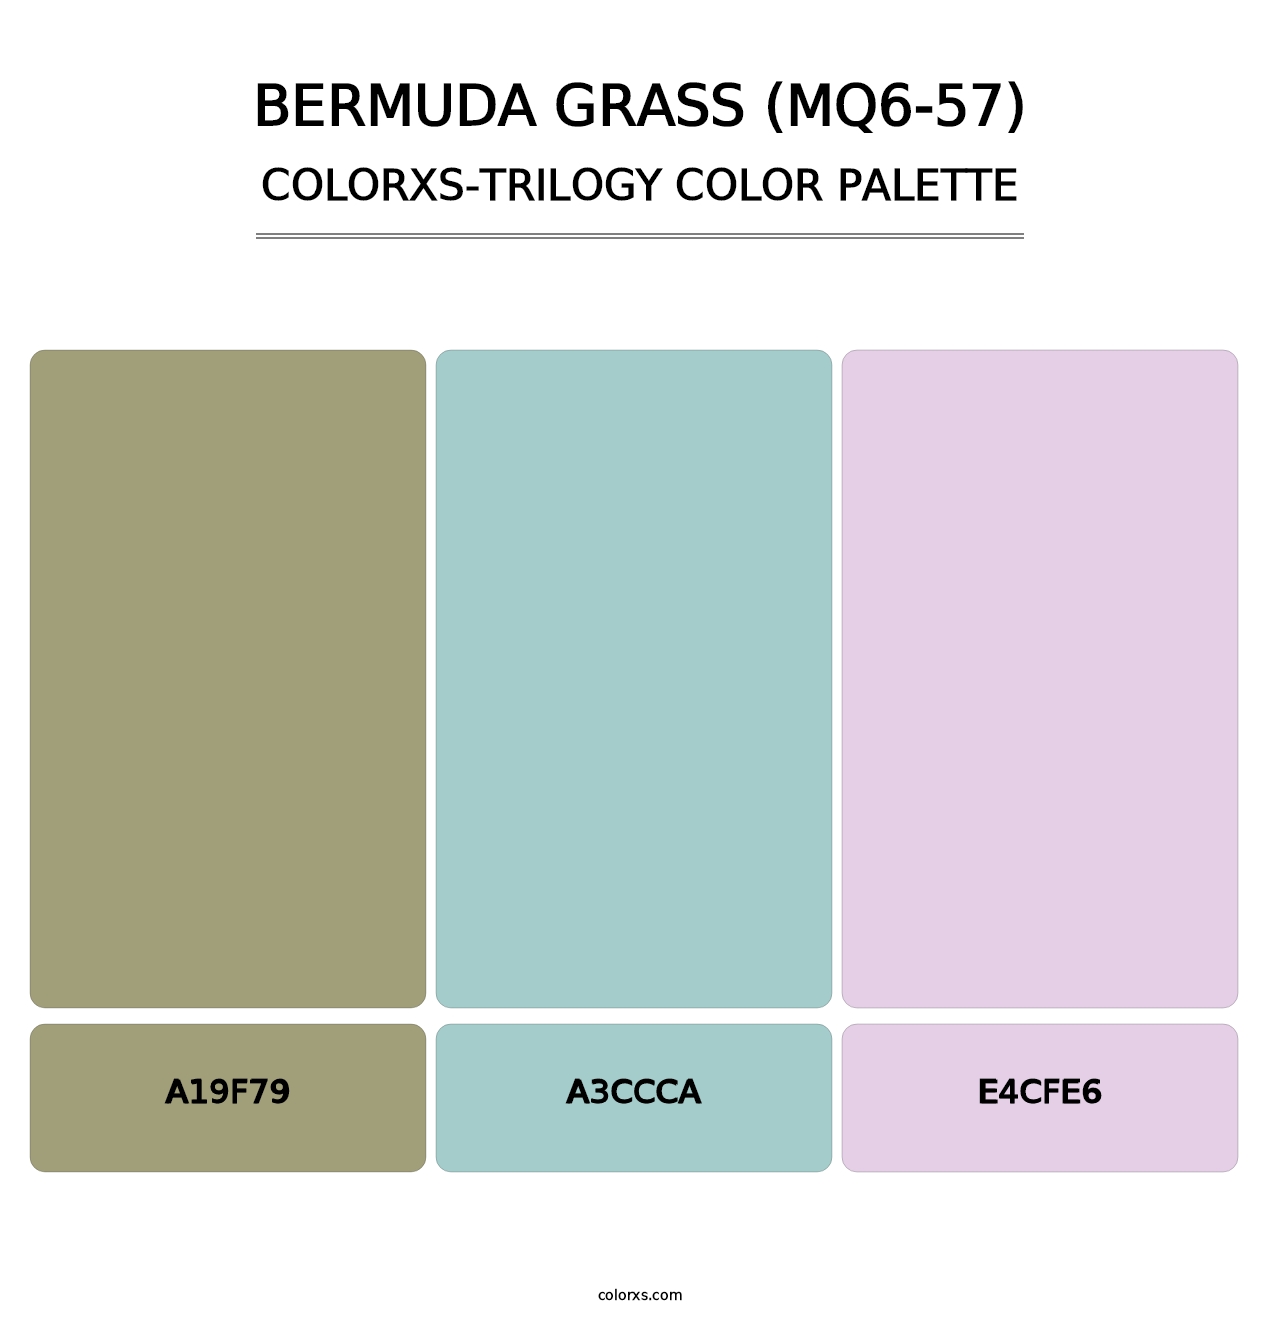 Bermuda Grass (MQ6-57) - Colorxs Trilogy Palette